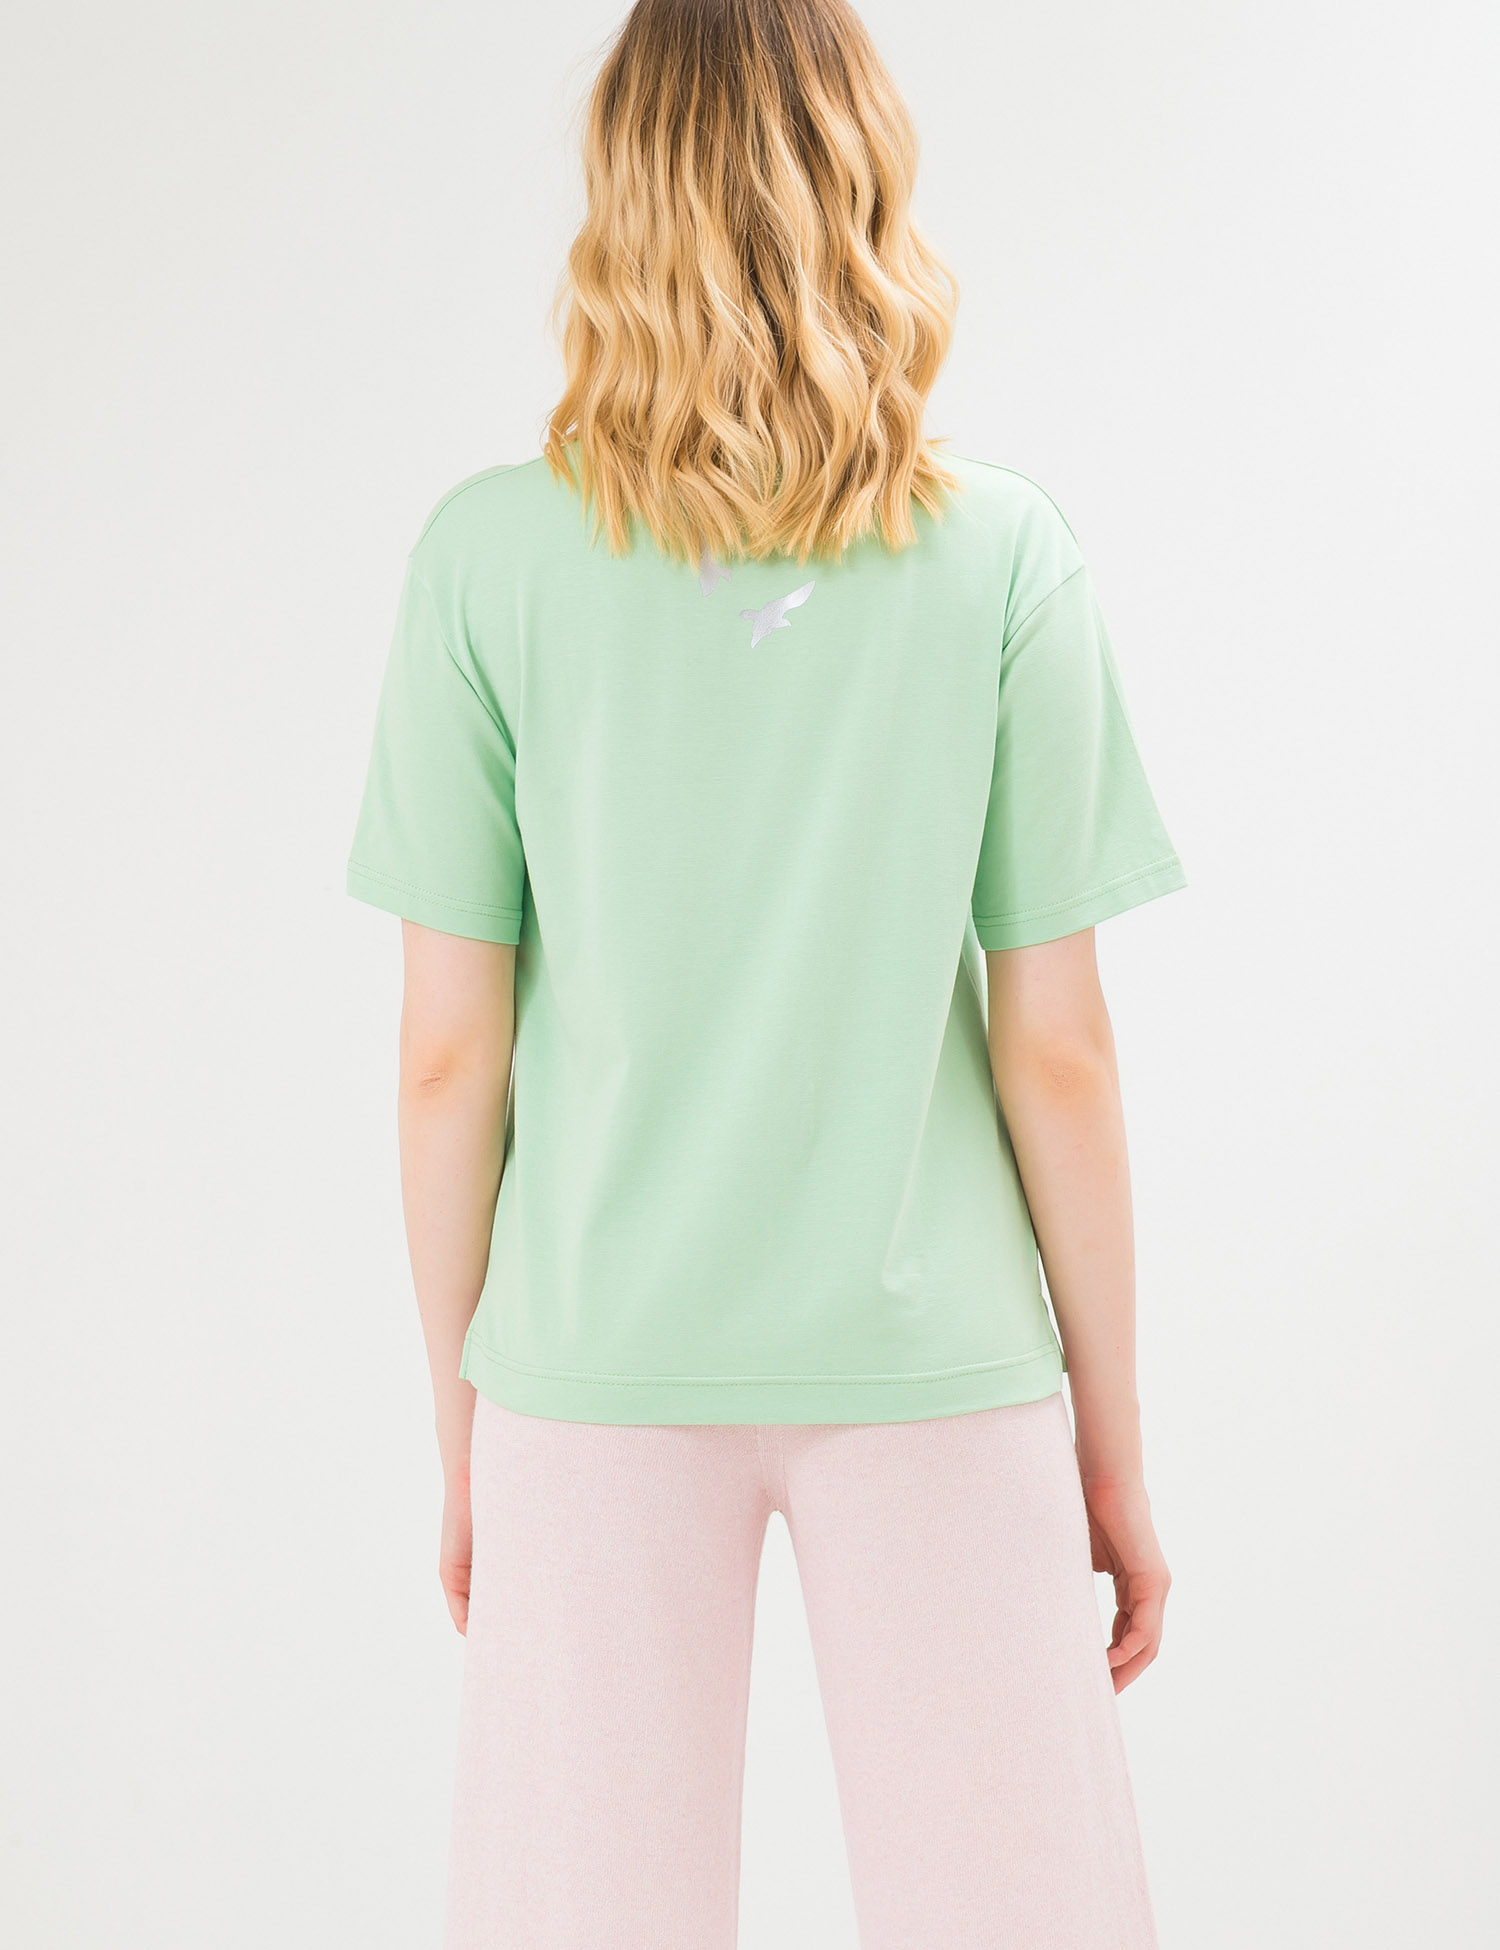 Картинка Жіноча світло-зелена футболка